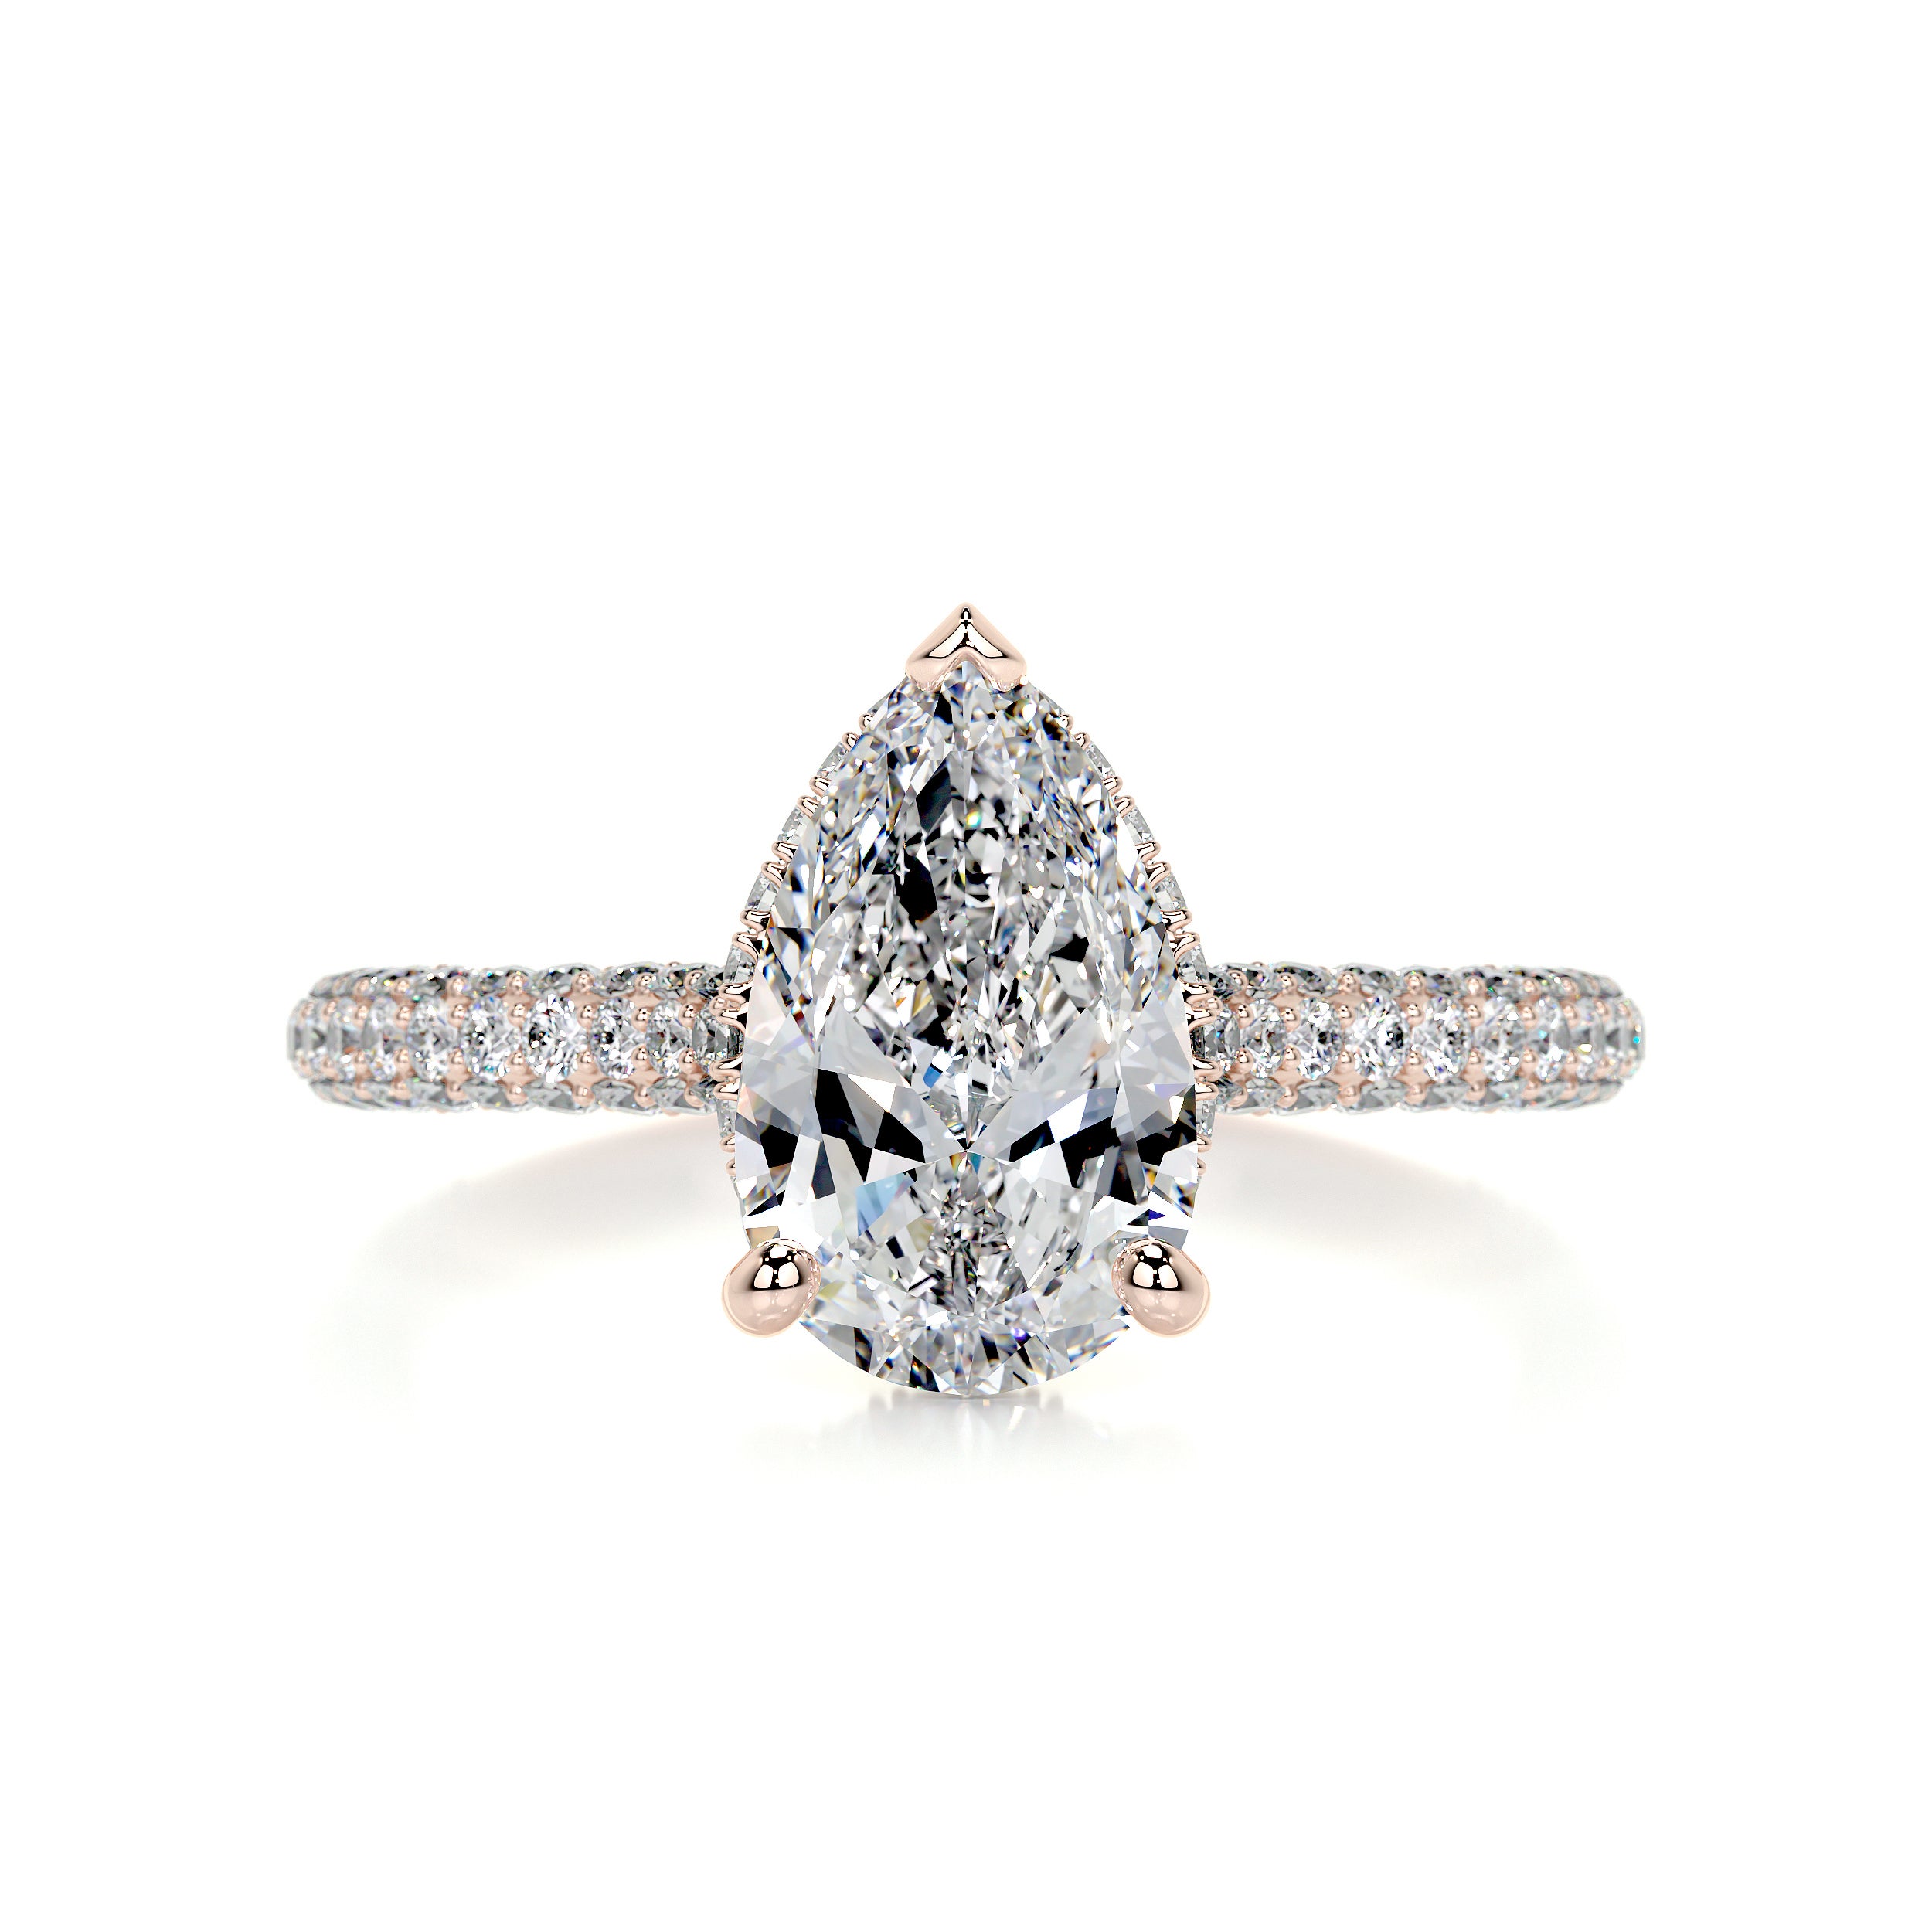 Nakia Diamond Engagement Ring   (2.00 Carat) -14K Rose Gold